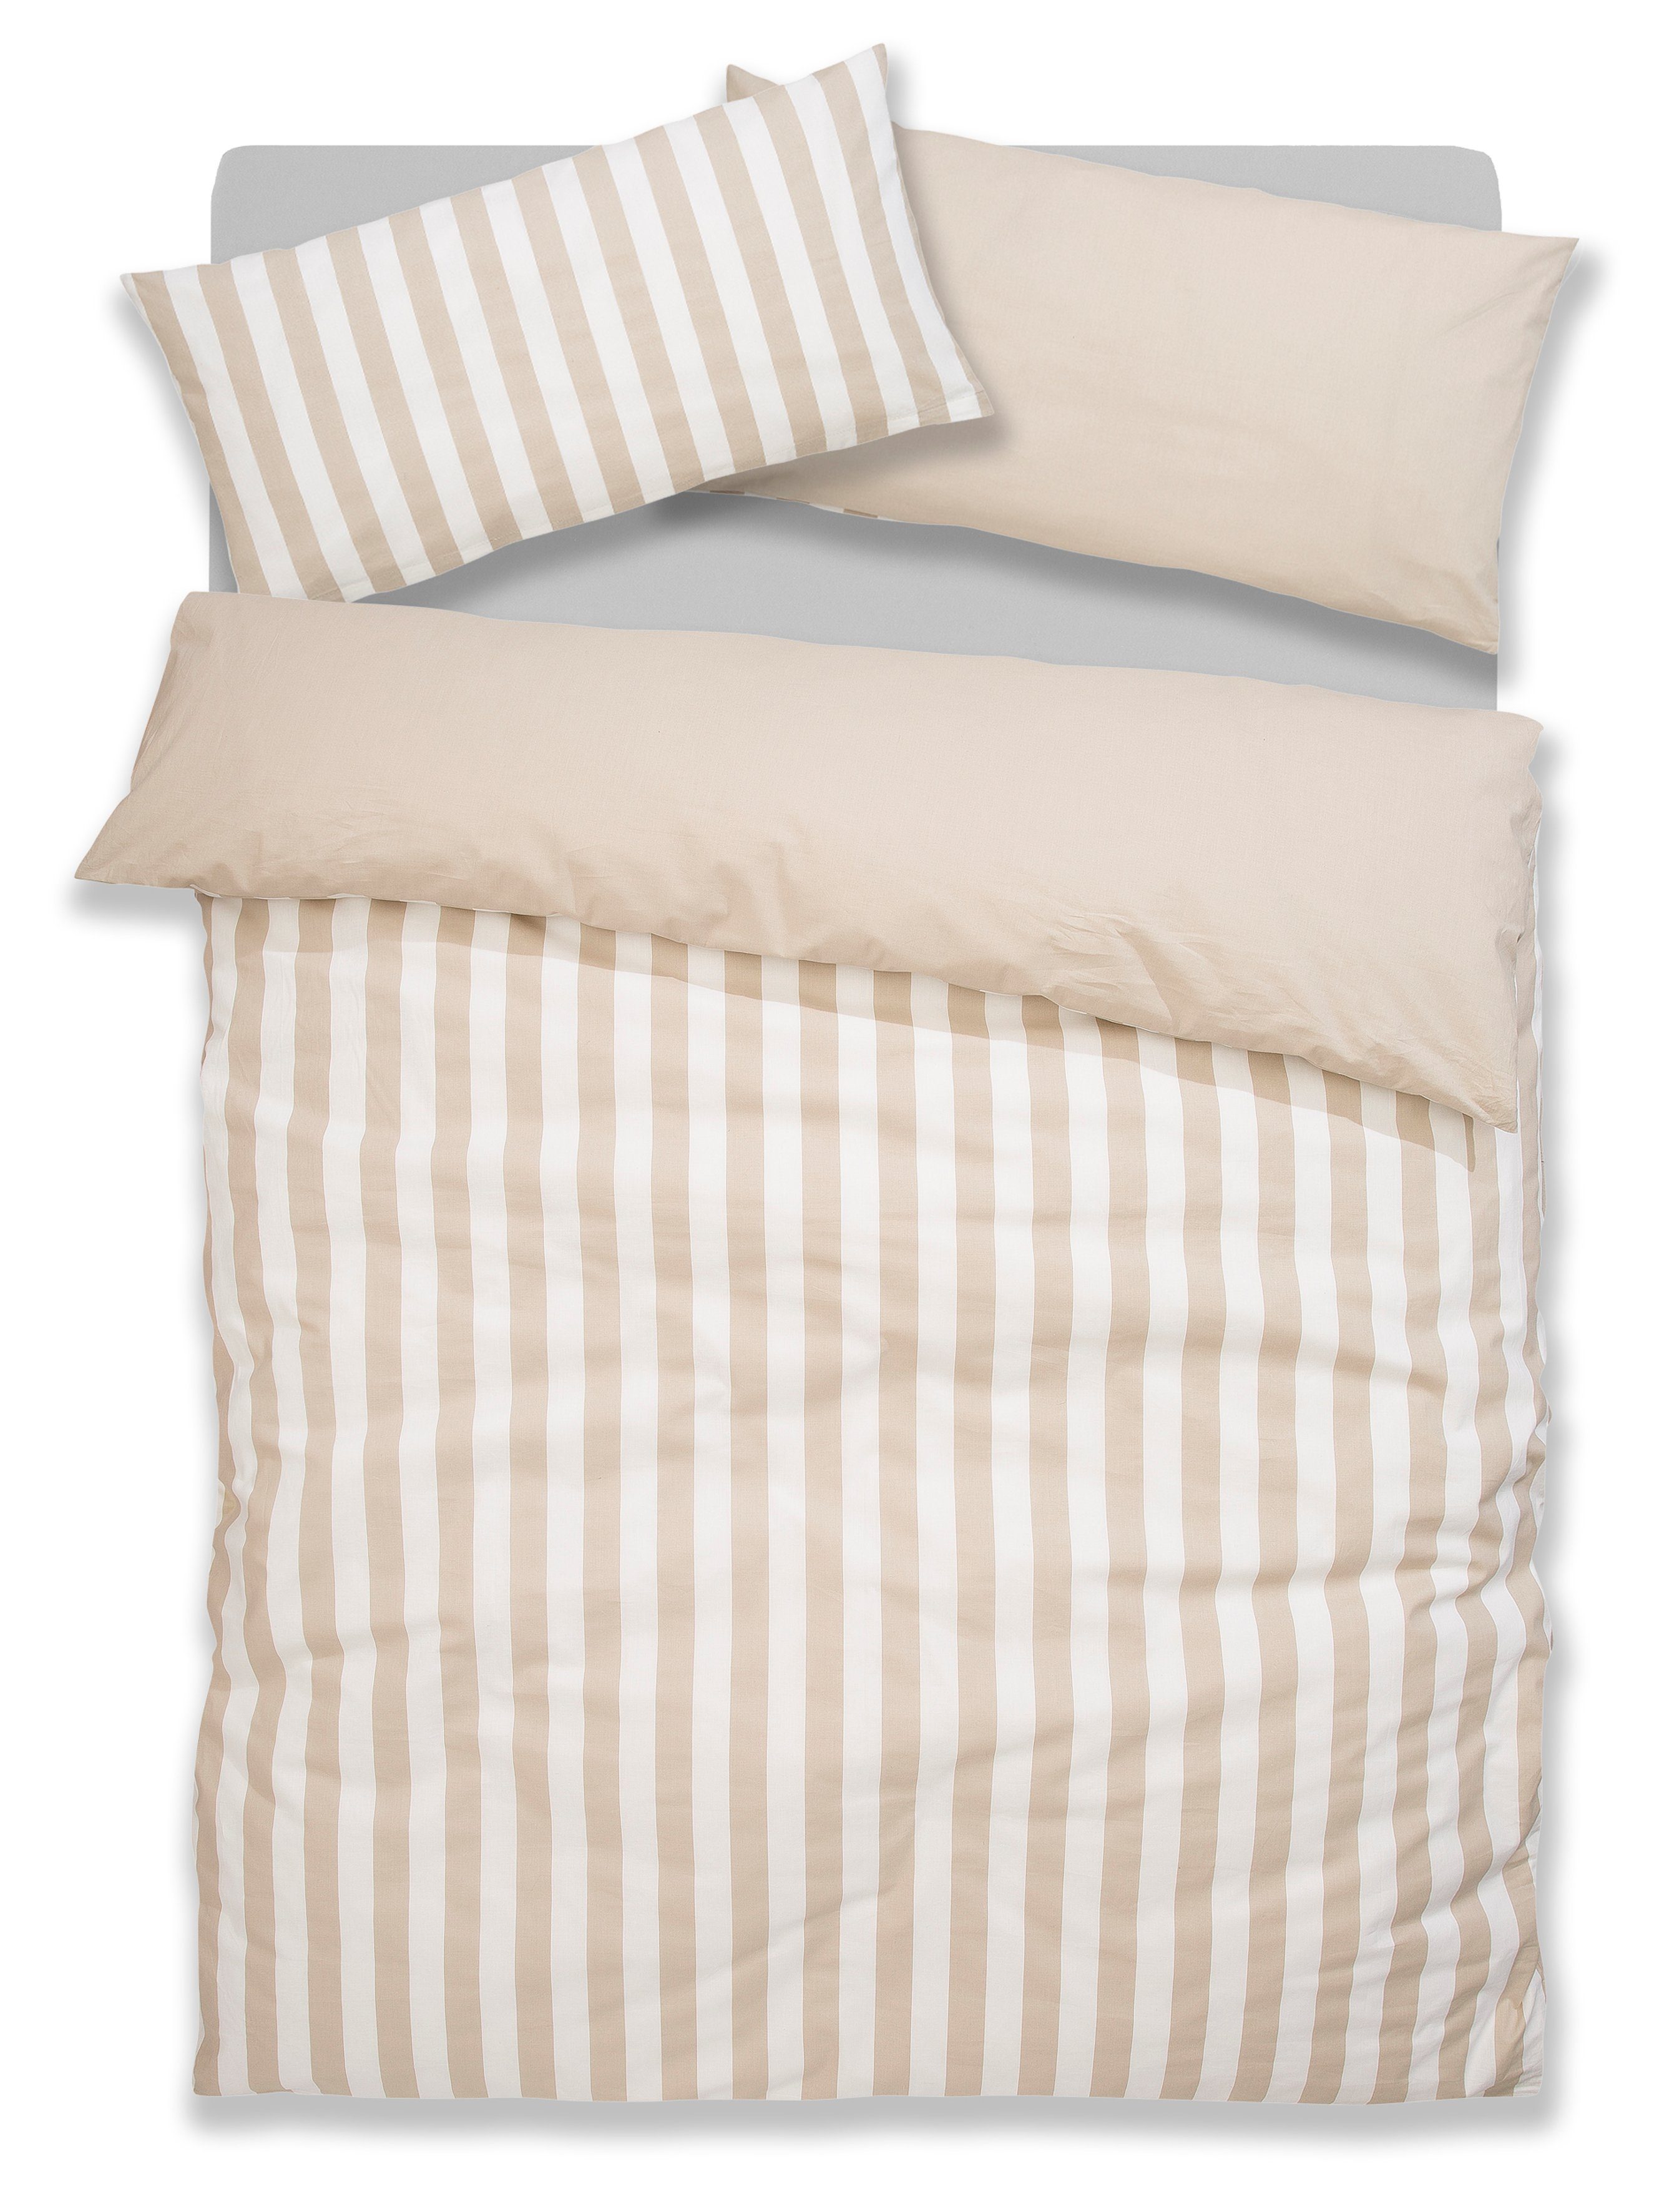 Bettwäsche Serie Greta, andas, Biber, 2 teilig, Baumwolle, Bettwäsche mit  Streifen in verschiedenen Qualitäten | Bettwäsche-Sets